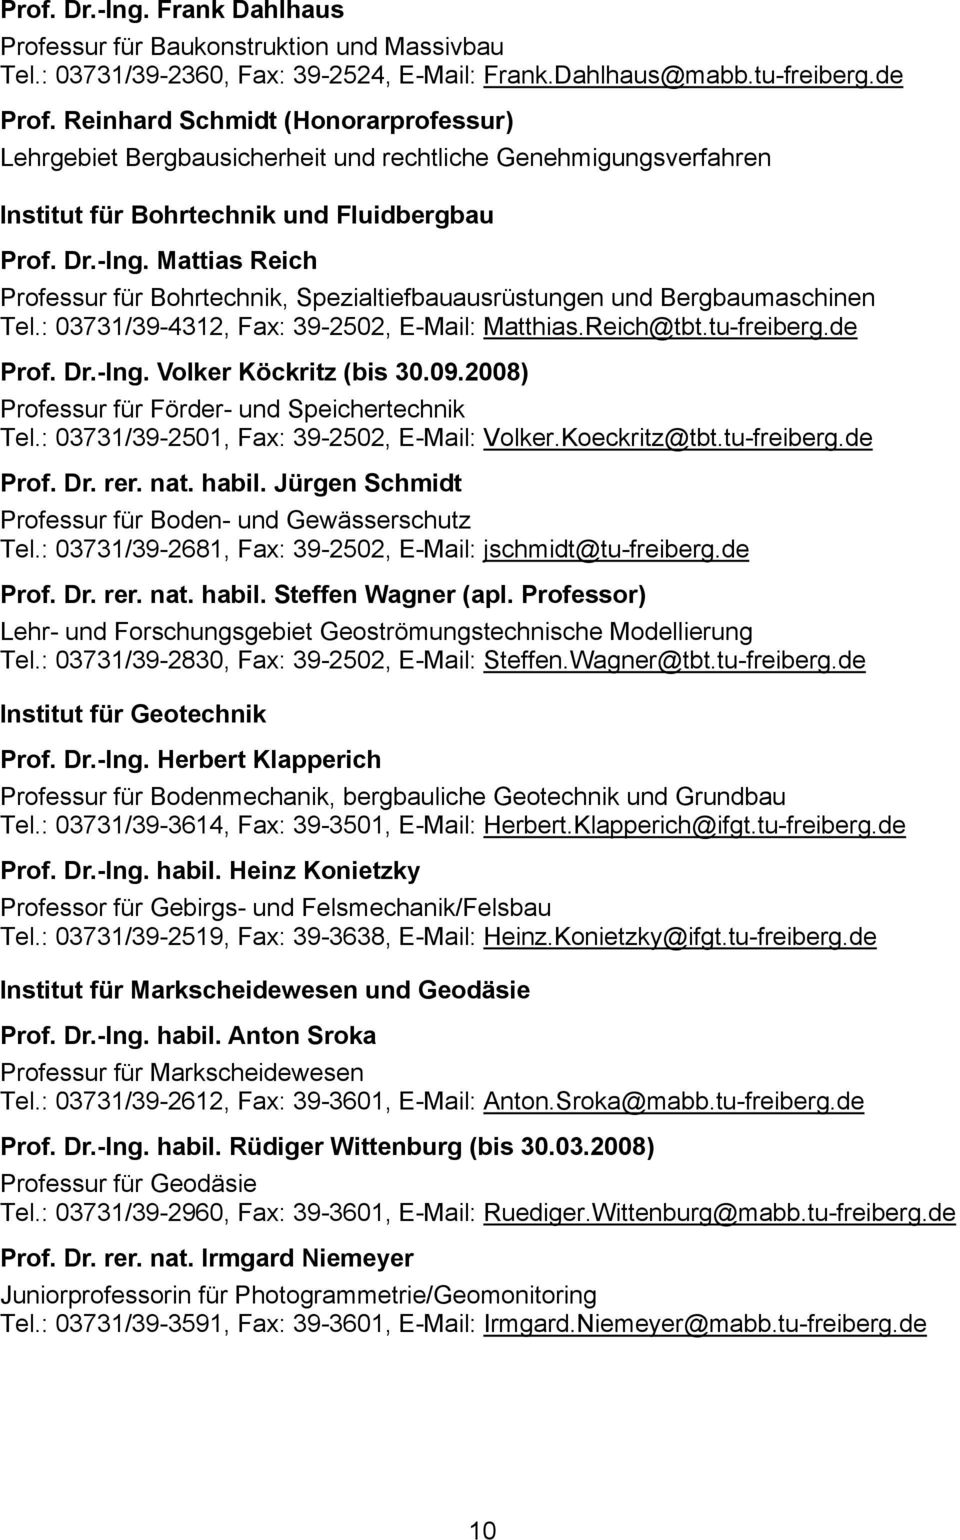 Mattias Reich Professur für Bohrtechnik, Spezialtiefbauausrüstungen und Bergbaumaschinen Tel.: 03731/39-4312, Fax: 39-2502, E-Mail: Matthias.Reich@tbt.tu-freiberg.de Prof. Dr.-Ing.